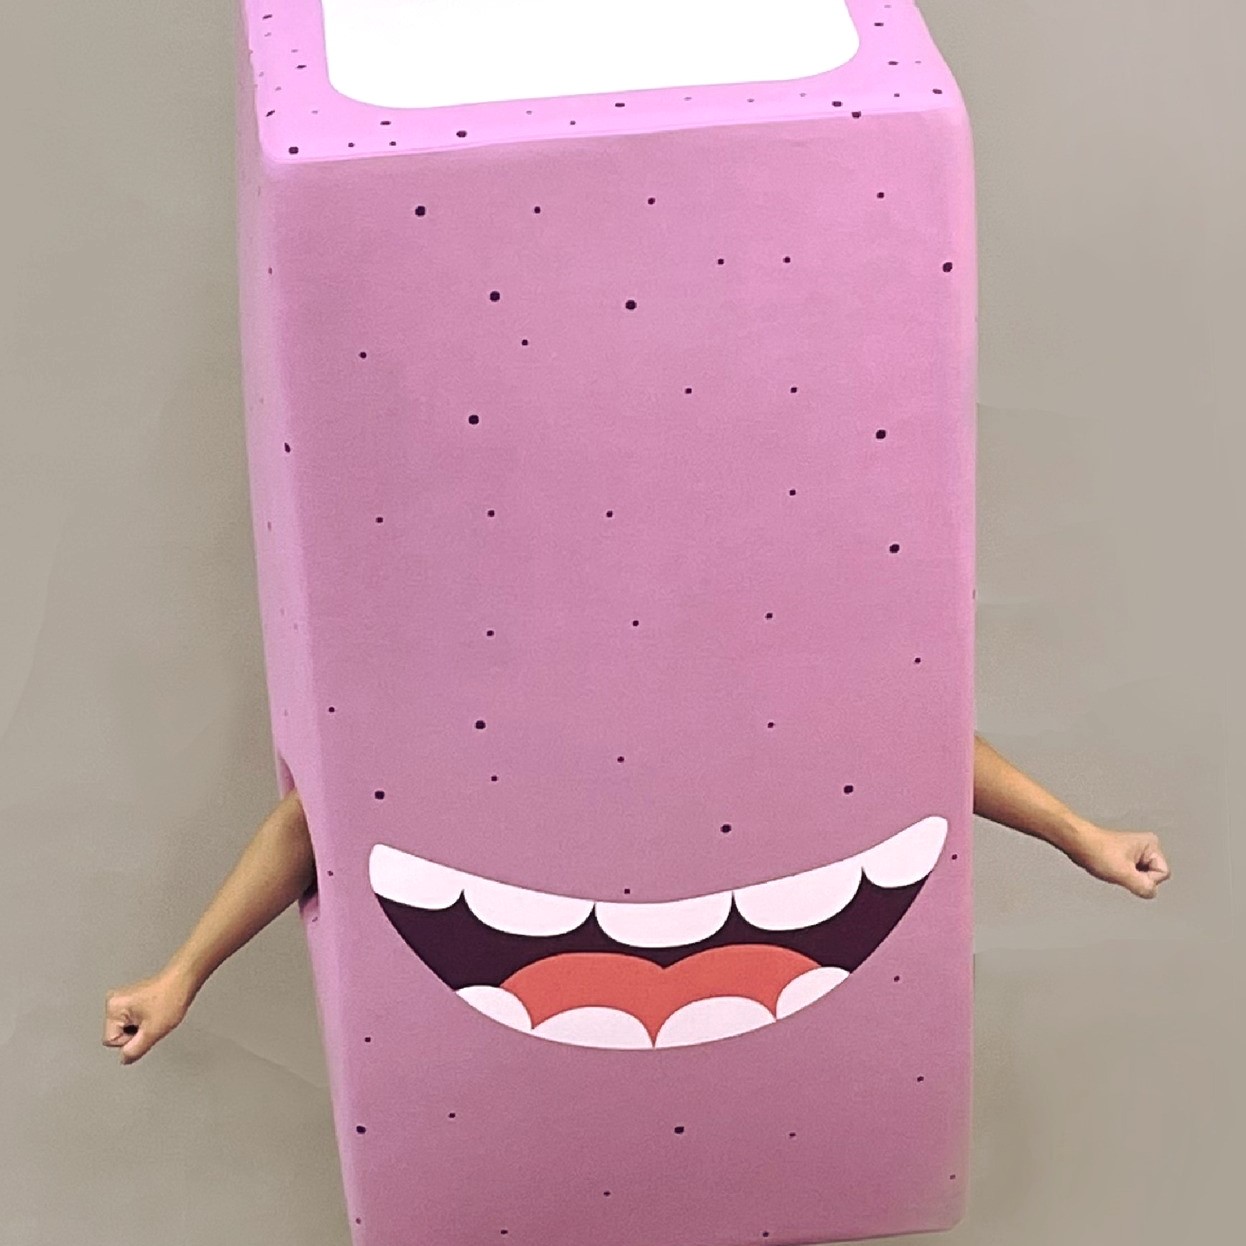 2021魔人社HI-CHEW軟糖人偶裝製作 Candy costume